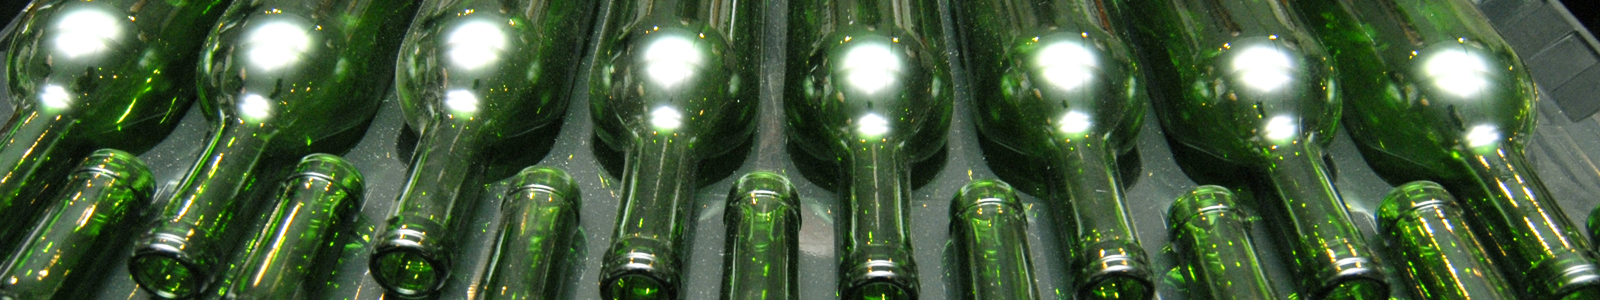 Grüne, leere Weinflaschen ©Feuerbach